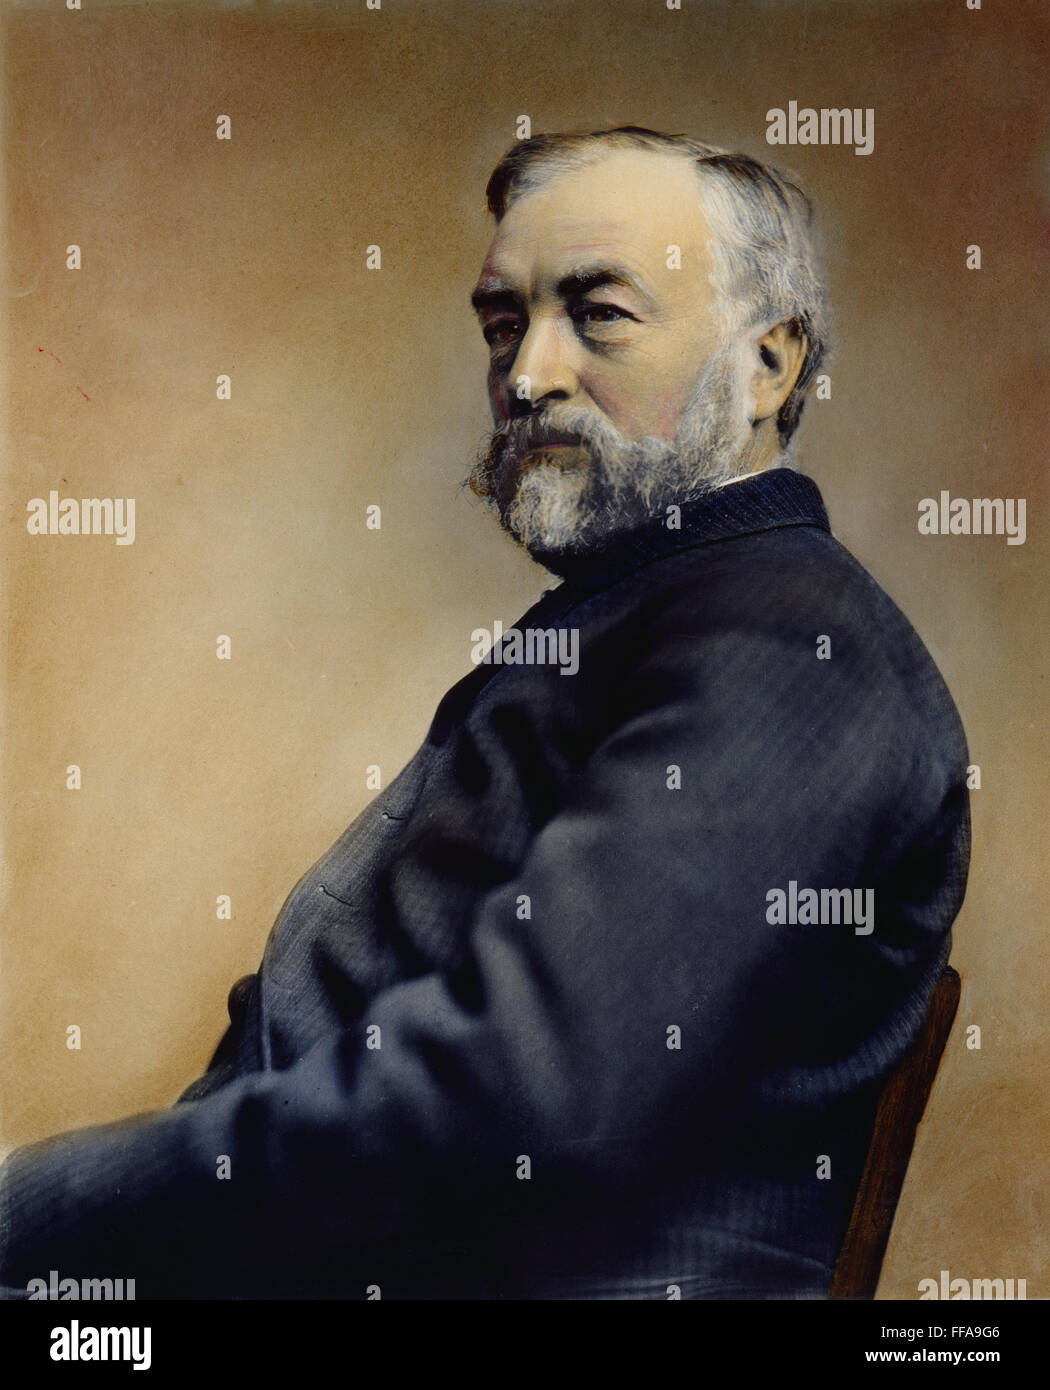 SAMUEL PIERPONT LANGLEY /n(1834-1906). L'astronome américain et pionnier de l'avion. Huile à une photographie, c1894. Banque D'Images